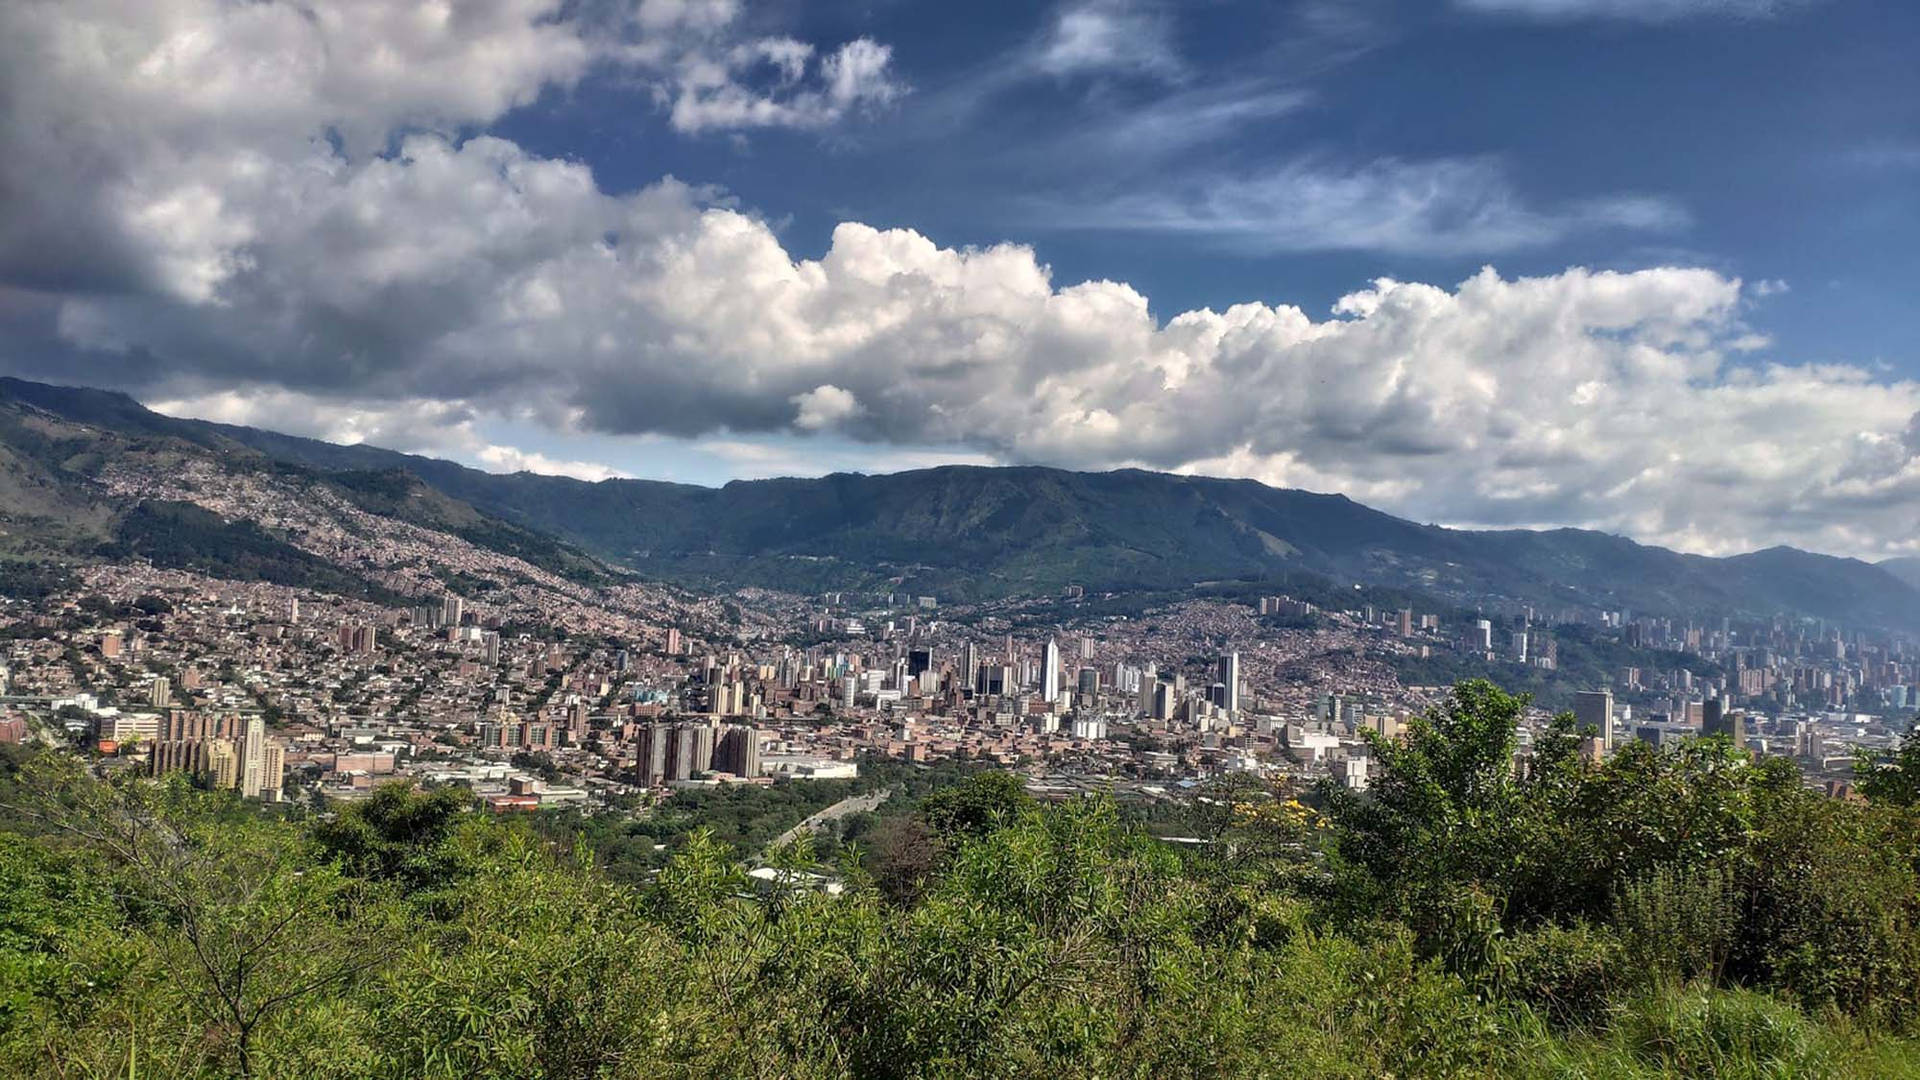 Medellin El Volador Hill View: Se det smukke udsyn af El Volador Hill fra Medellin, Colombia. Wallpaper